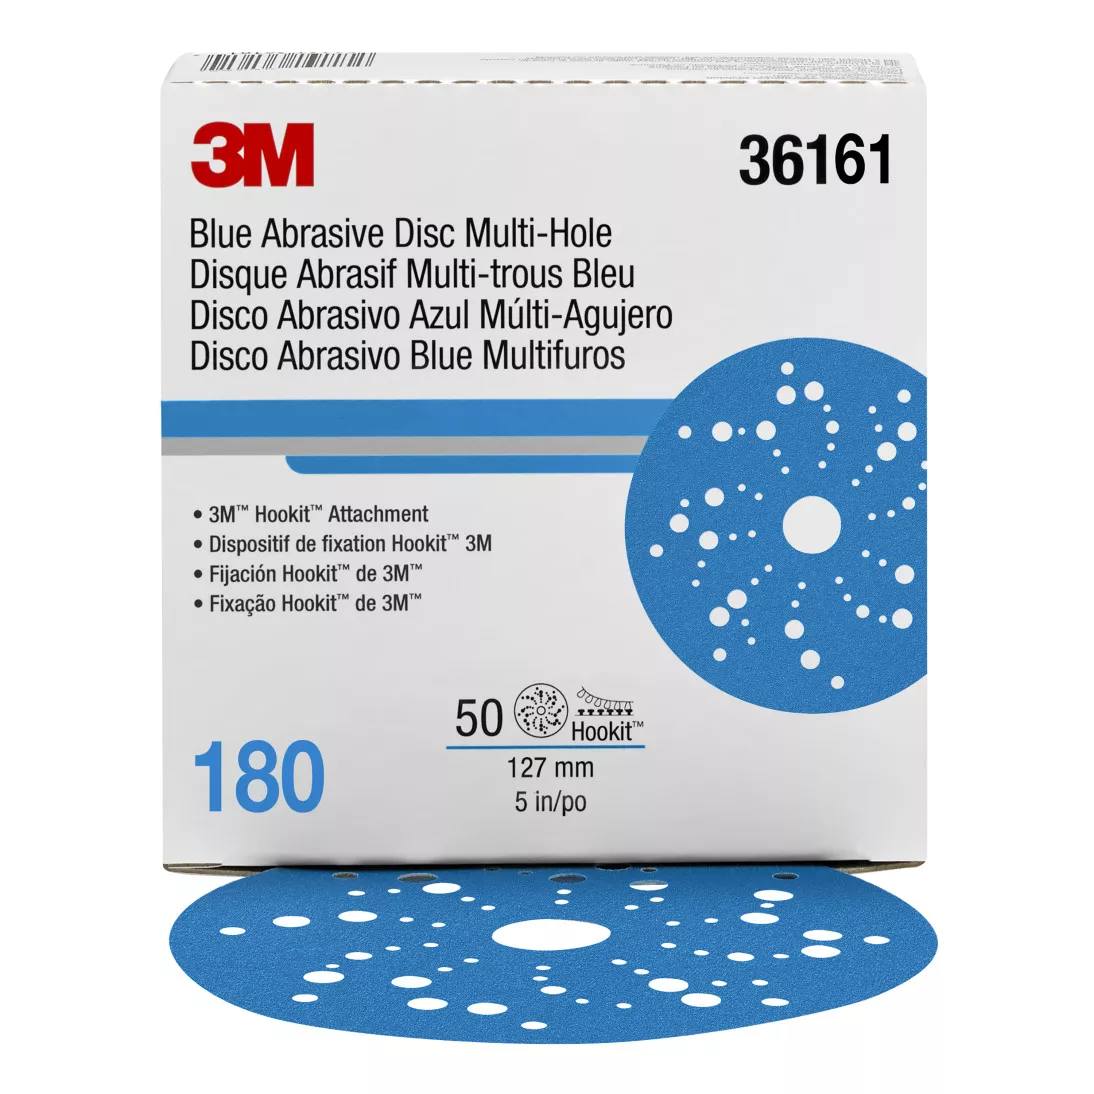 3M™ Hookit™ Blue Abrasive Disc 321U Multi-hole, 36161, 5 in, 180, 50
discs per carton, 4 cartons per case